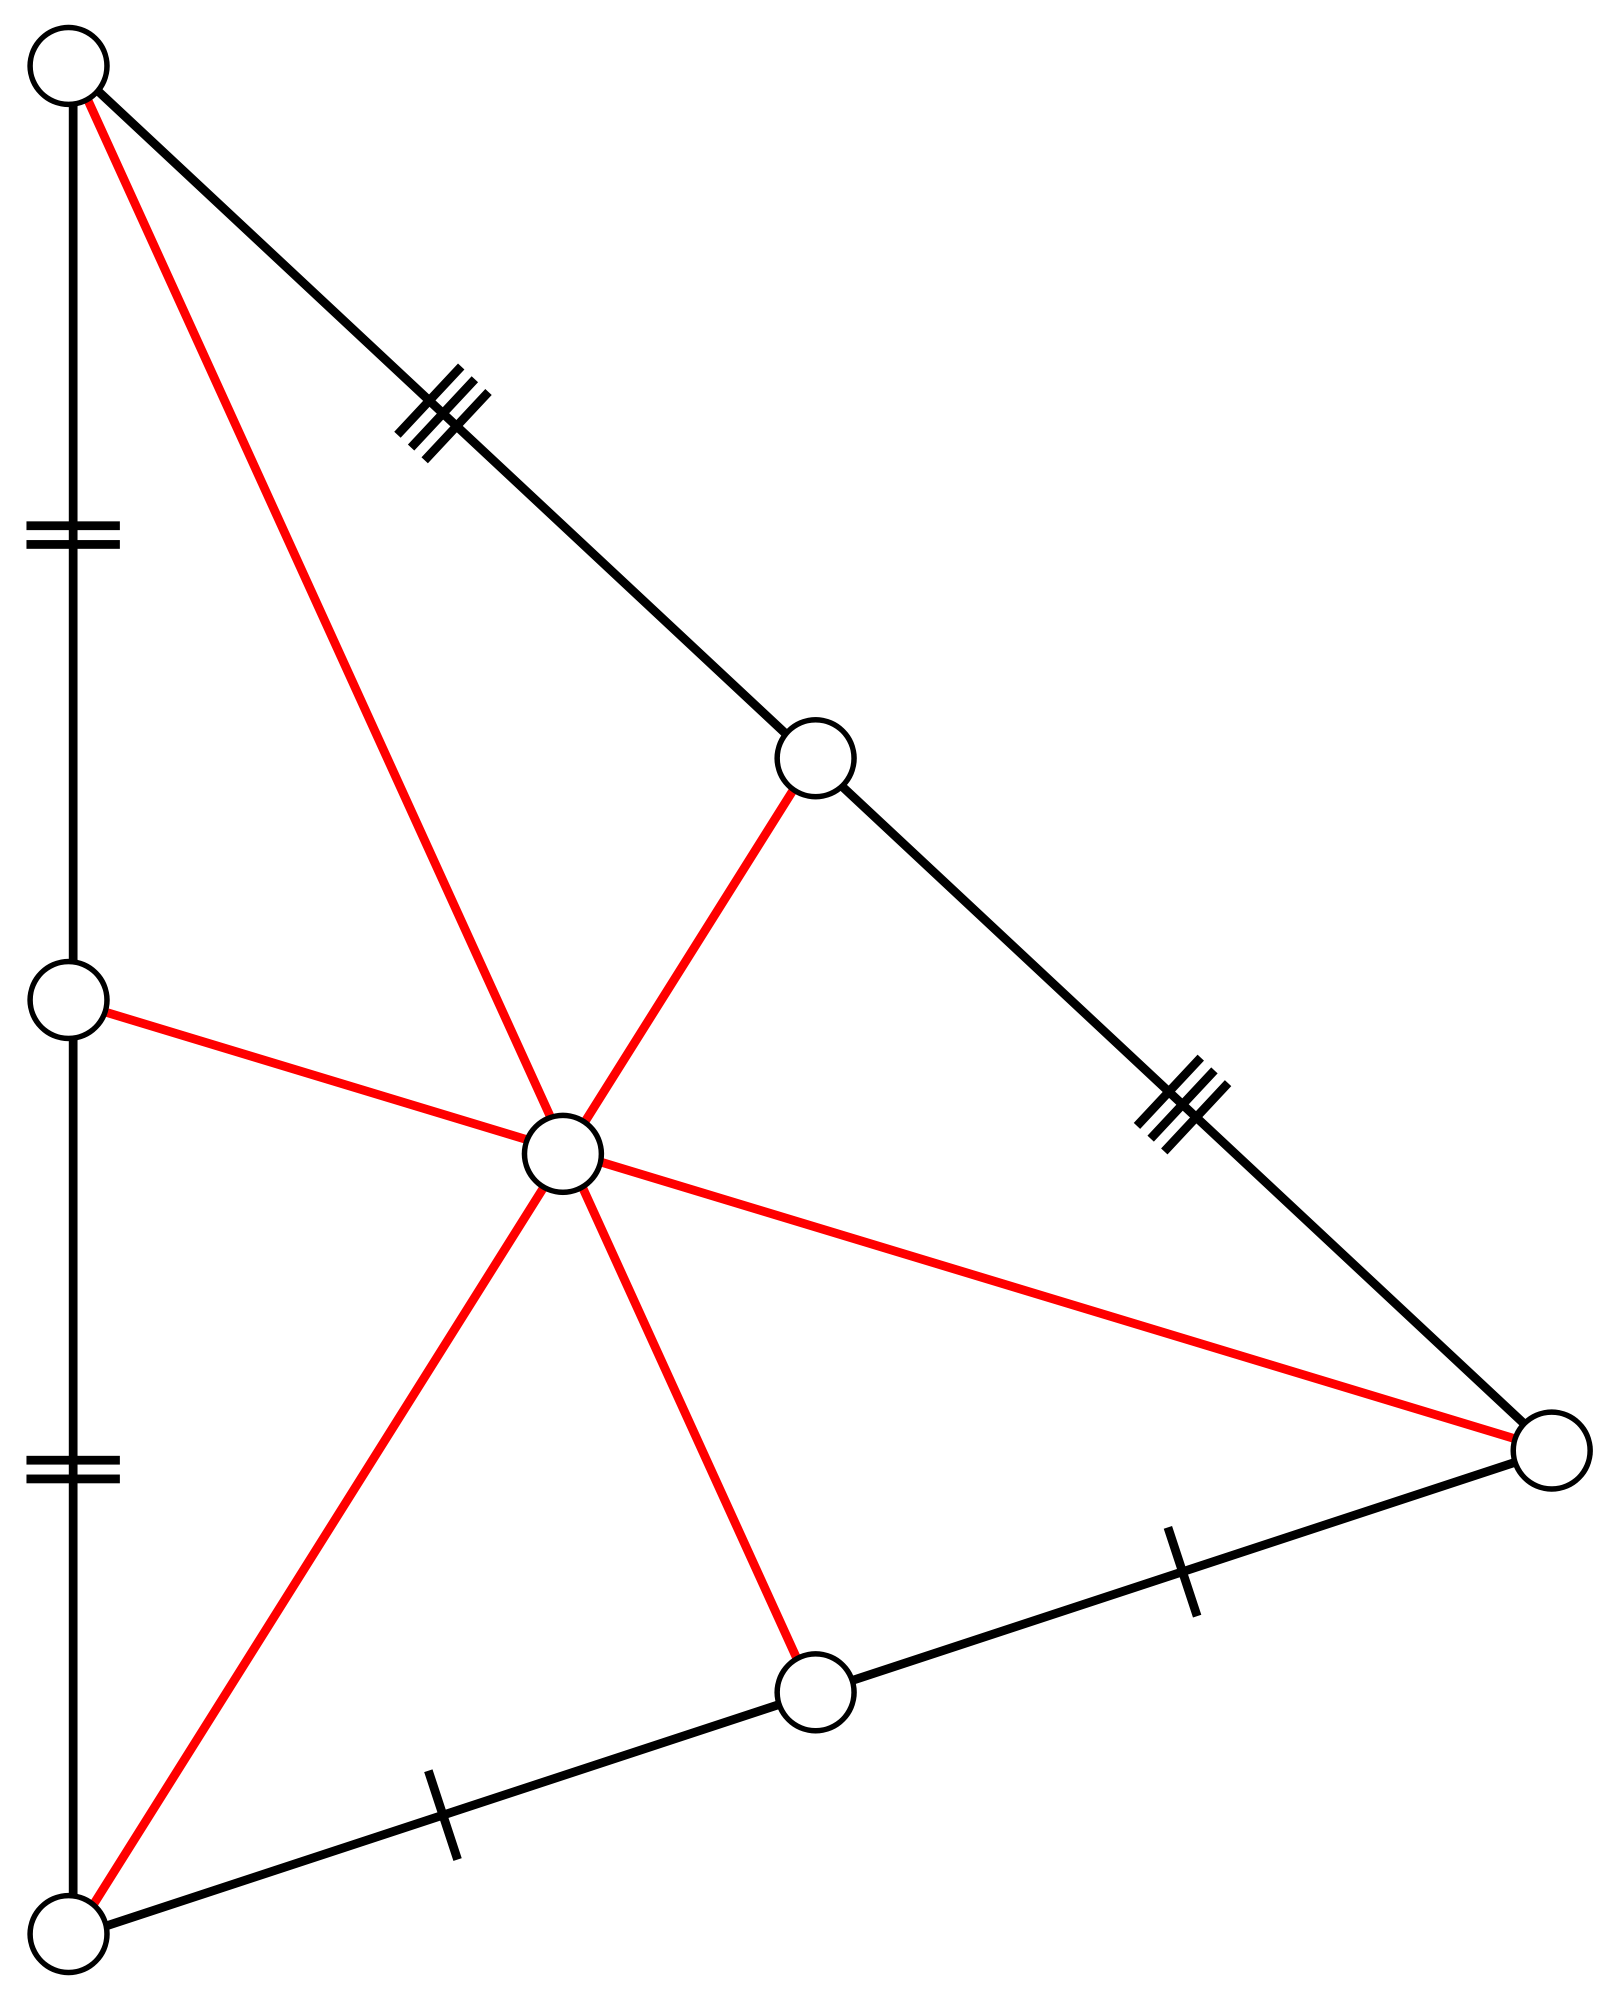 Centroide De Um Triangulo - ENSINO